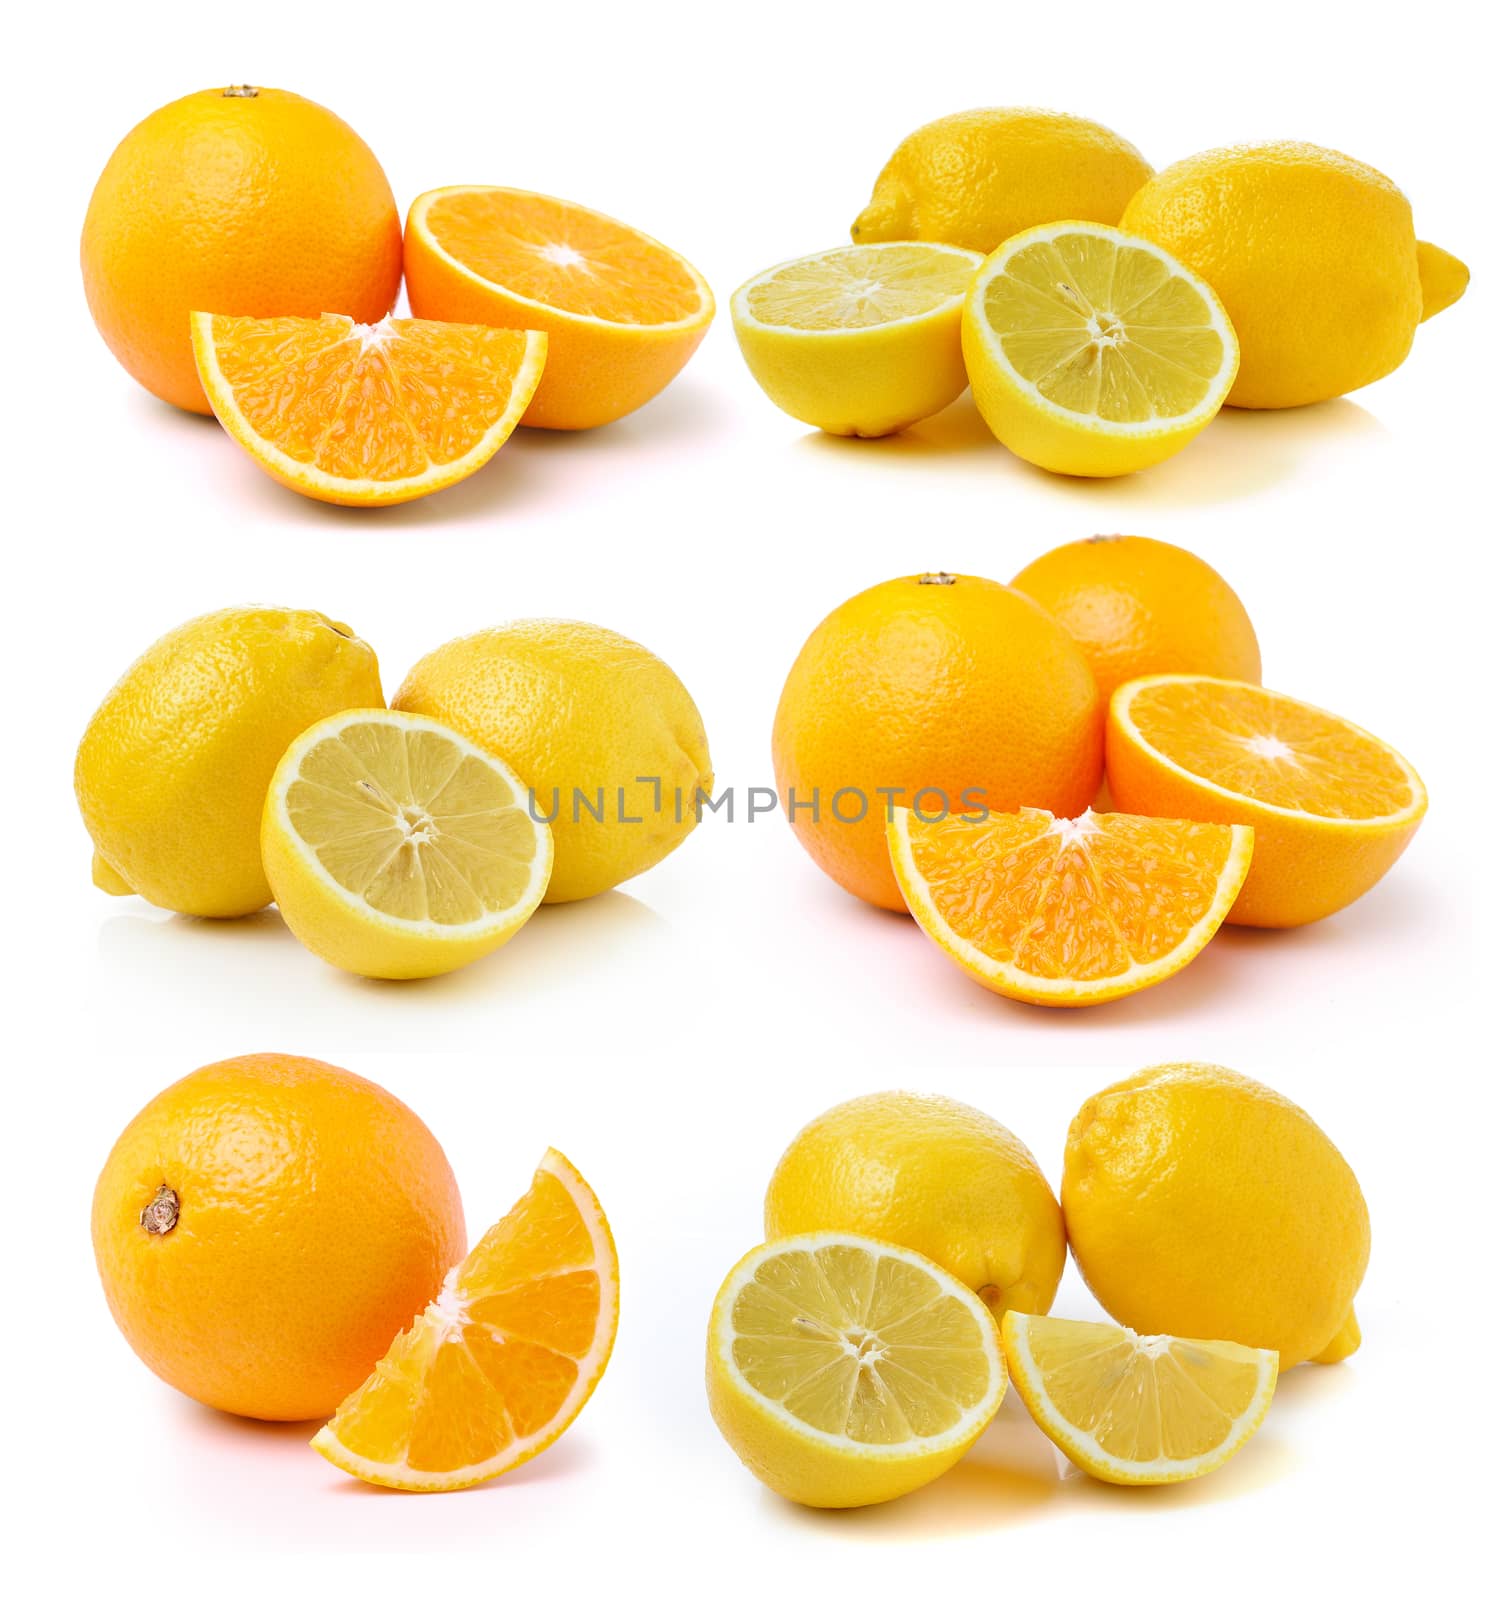 Fresh lemon and Orange fruit on white background by sommai